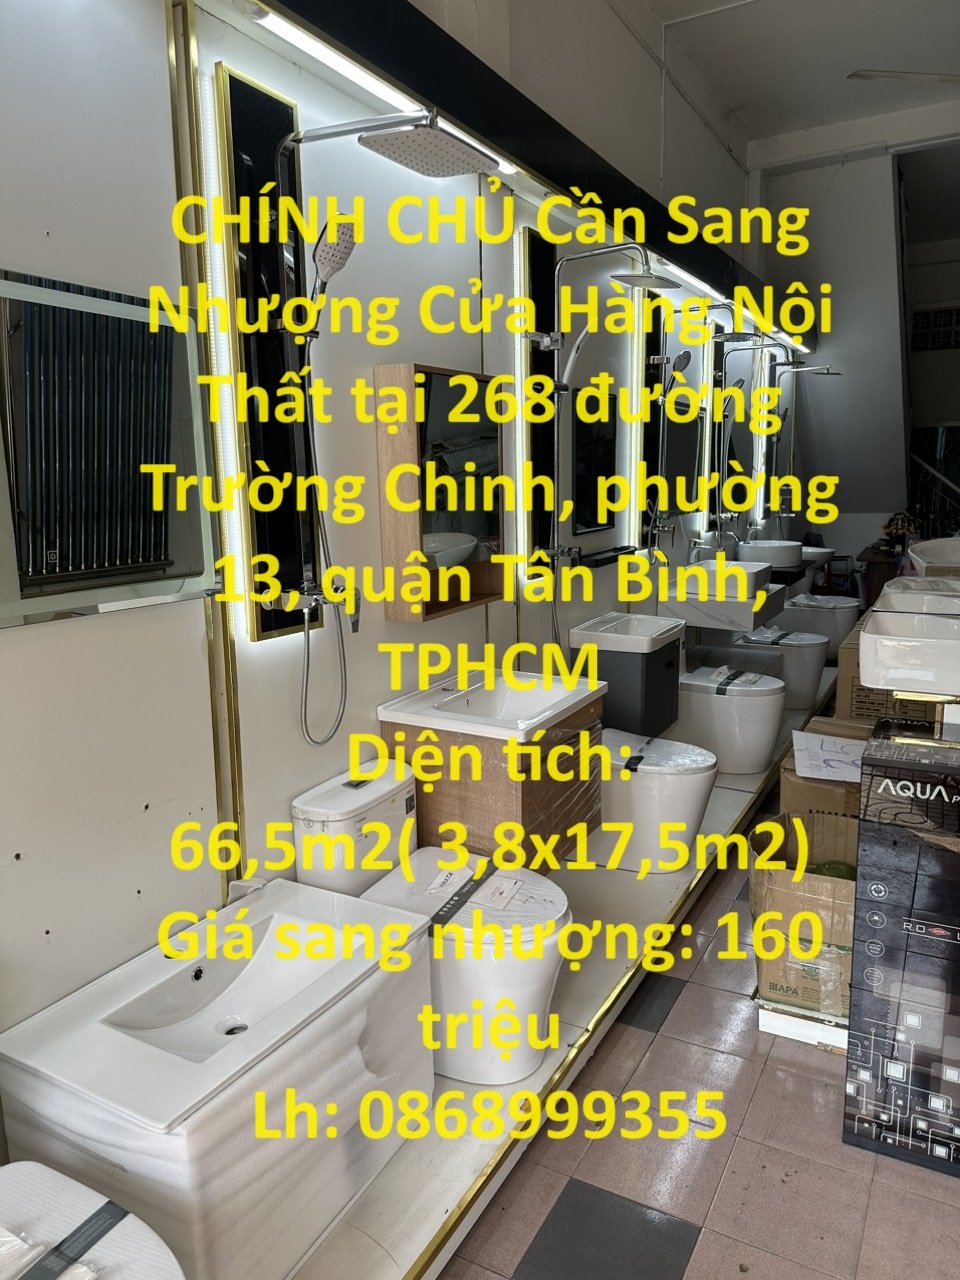 CHÍNH CHỦ Cần Sang Nhượng Cửa Hàng Nội Thất tại quận Tân Bình 1